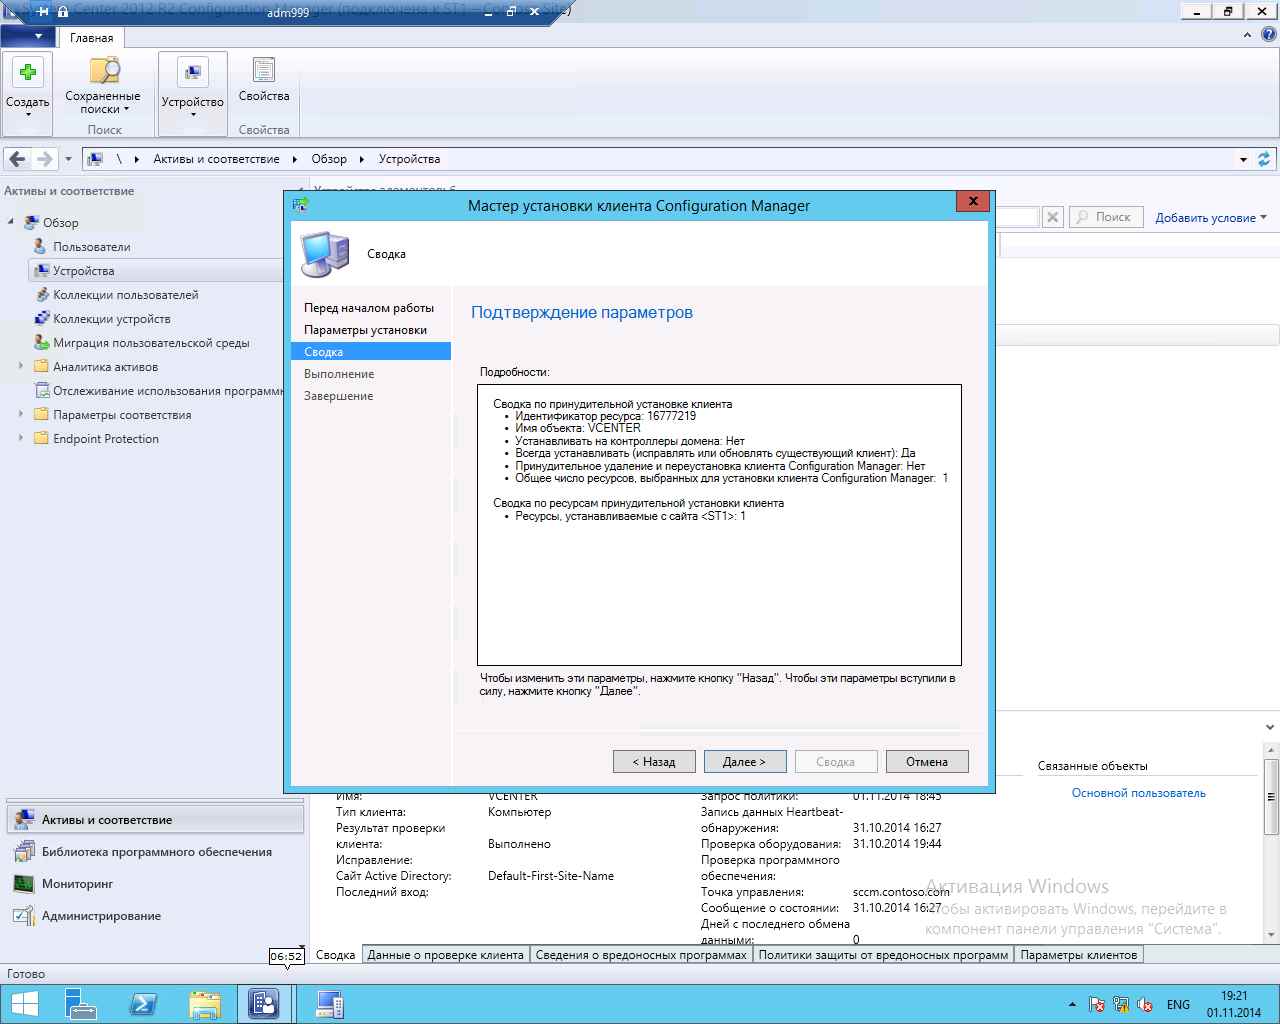 Как установить SCCM (System Center Configuration Manager) 2012R2 в windows server 2012R2 -6 часть. Как принудительно установить клиента-11